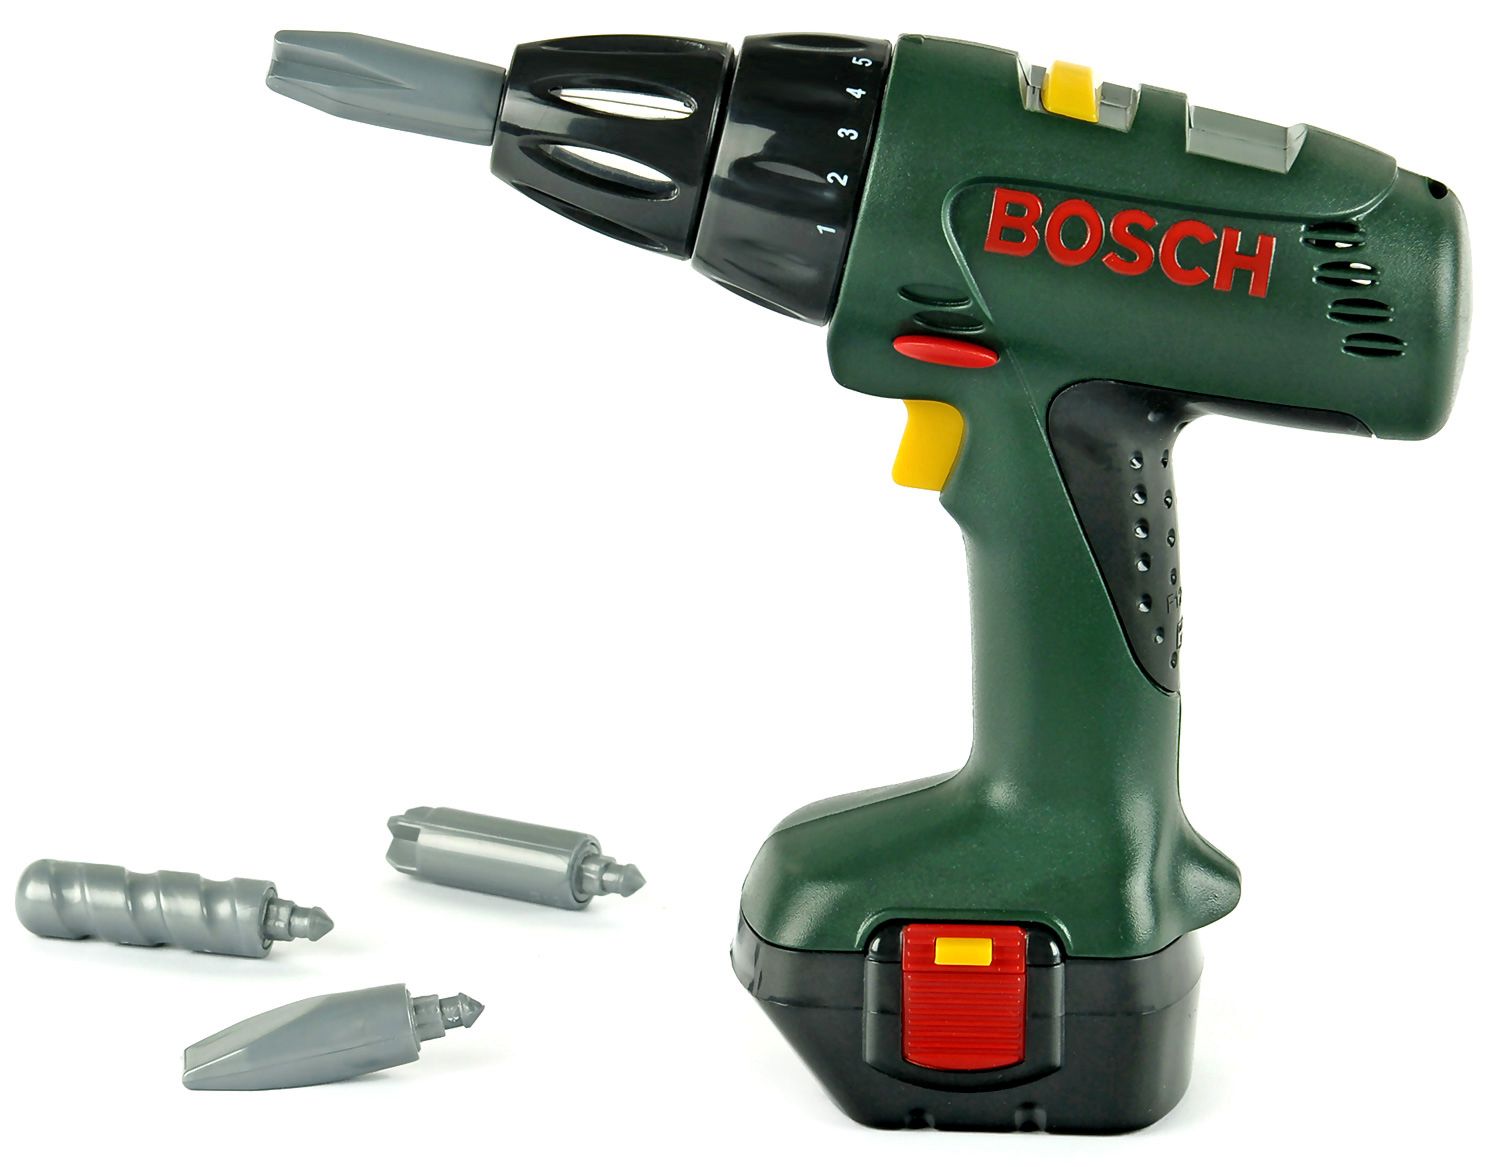 Детска акумулаторна бормашина - Bosch - играчка - store.bg